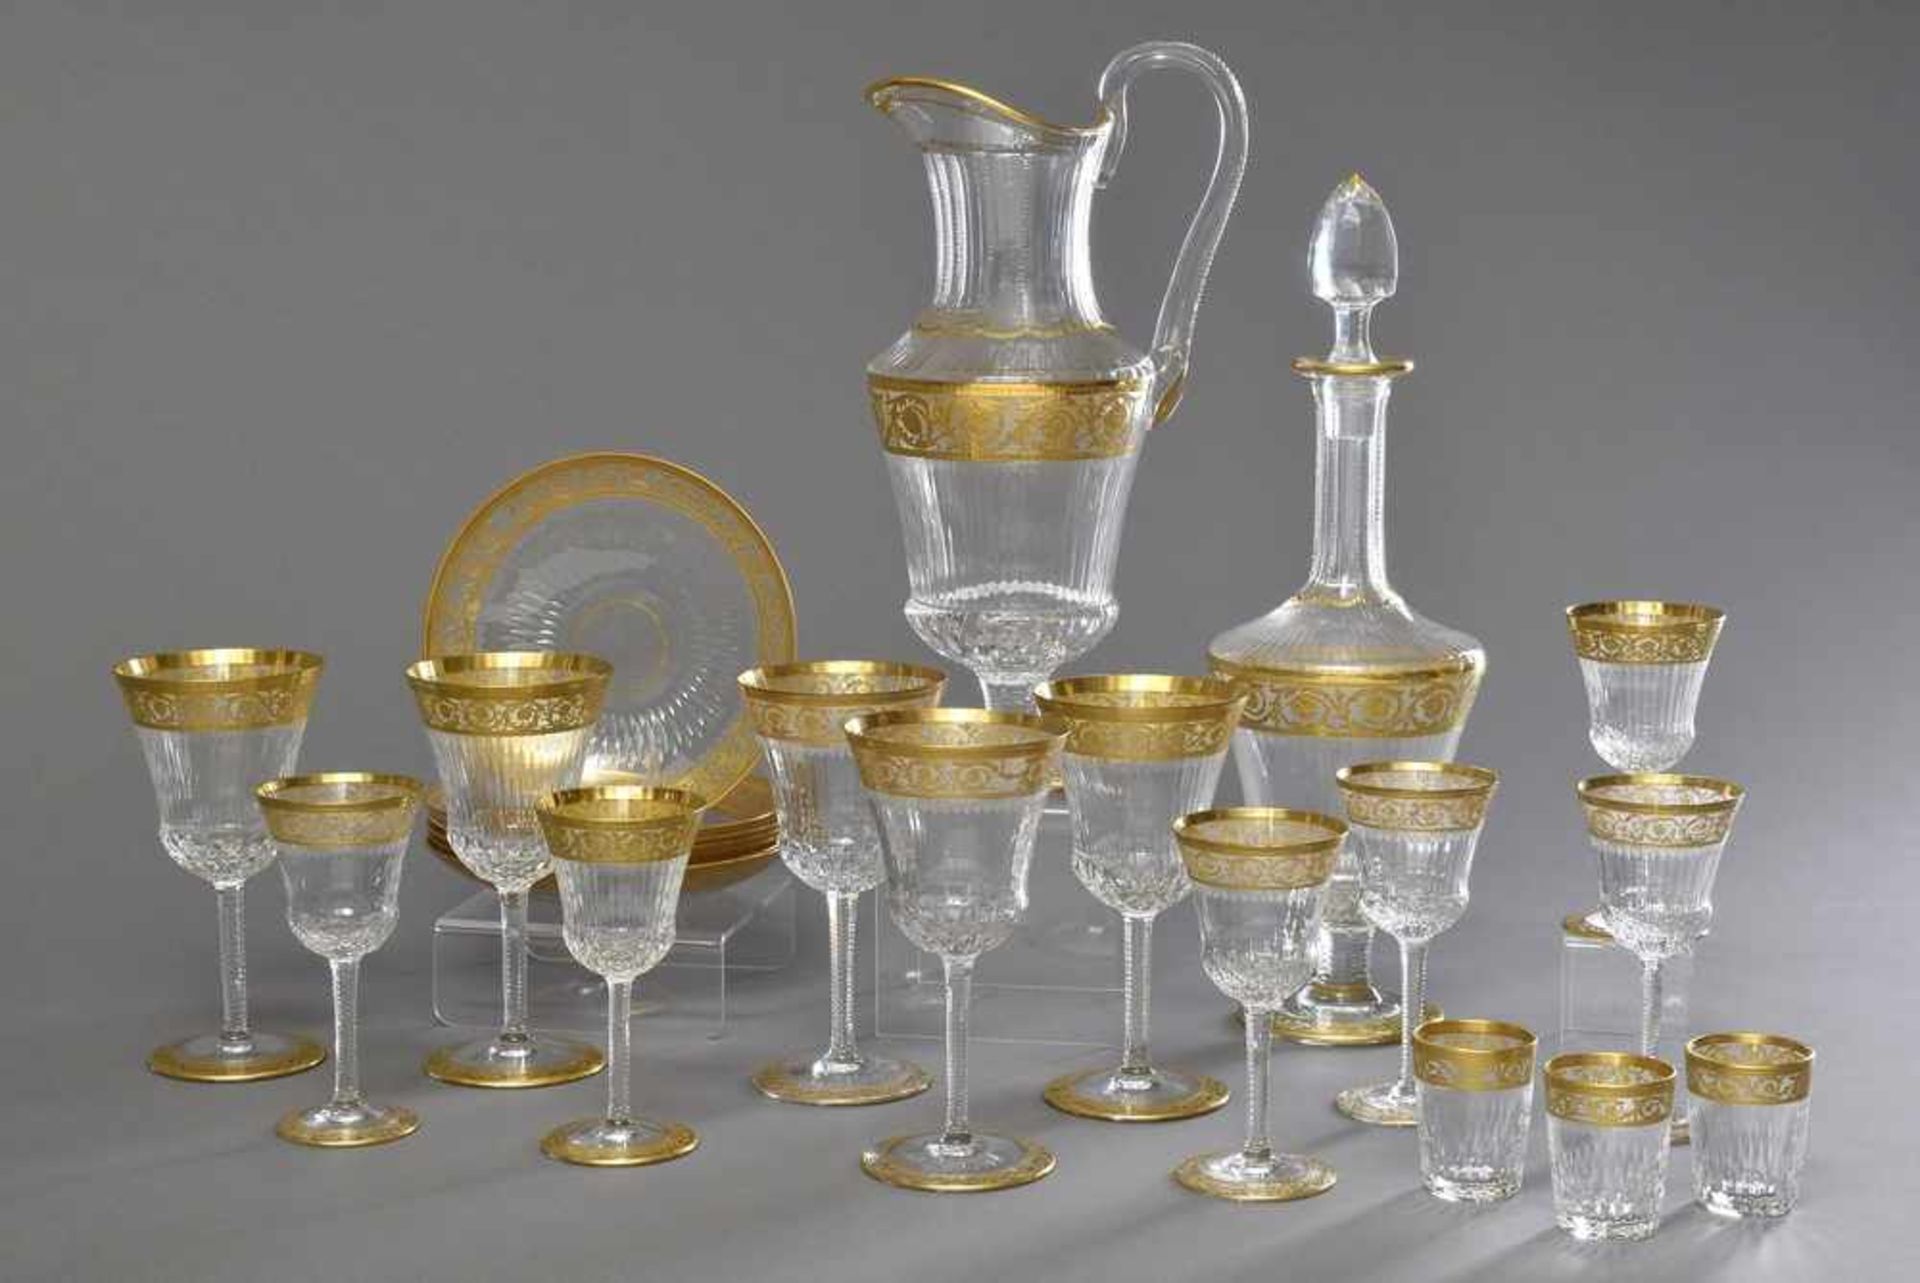 22 Teile Saint Louis "Thistle" Glasset, bestehend aus: 1 Wasserkanne (H. 29cm), 1 Karaffe auf Fuß (